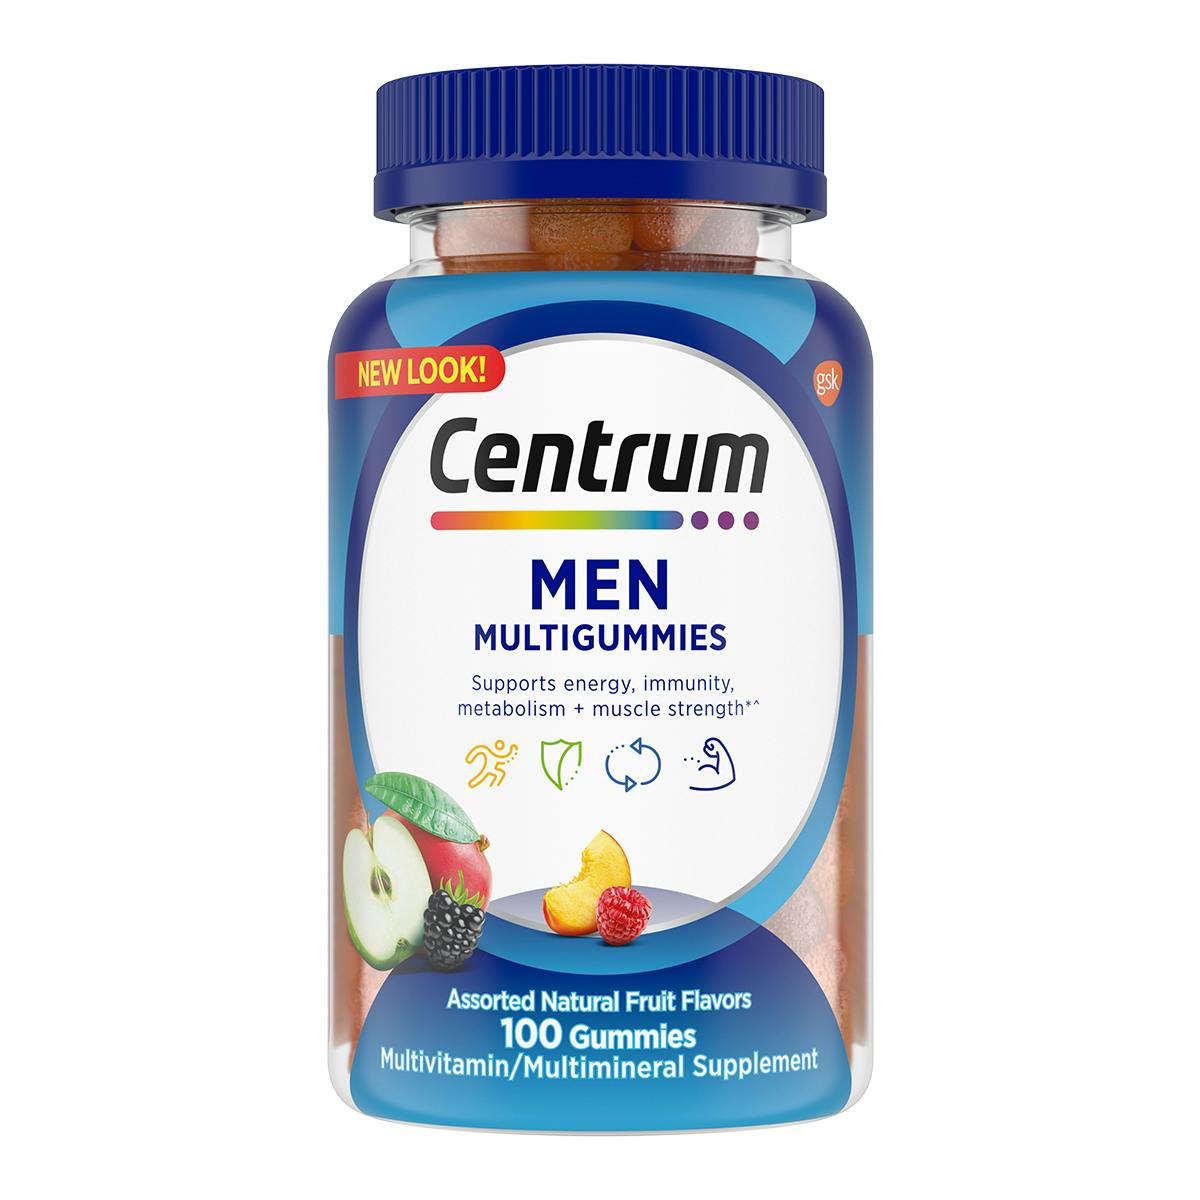 Box of Centrum Multigummies Men